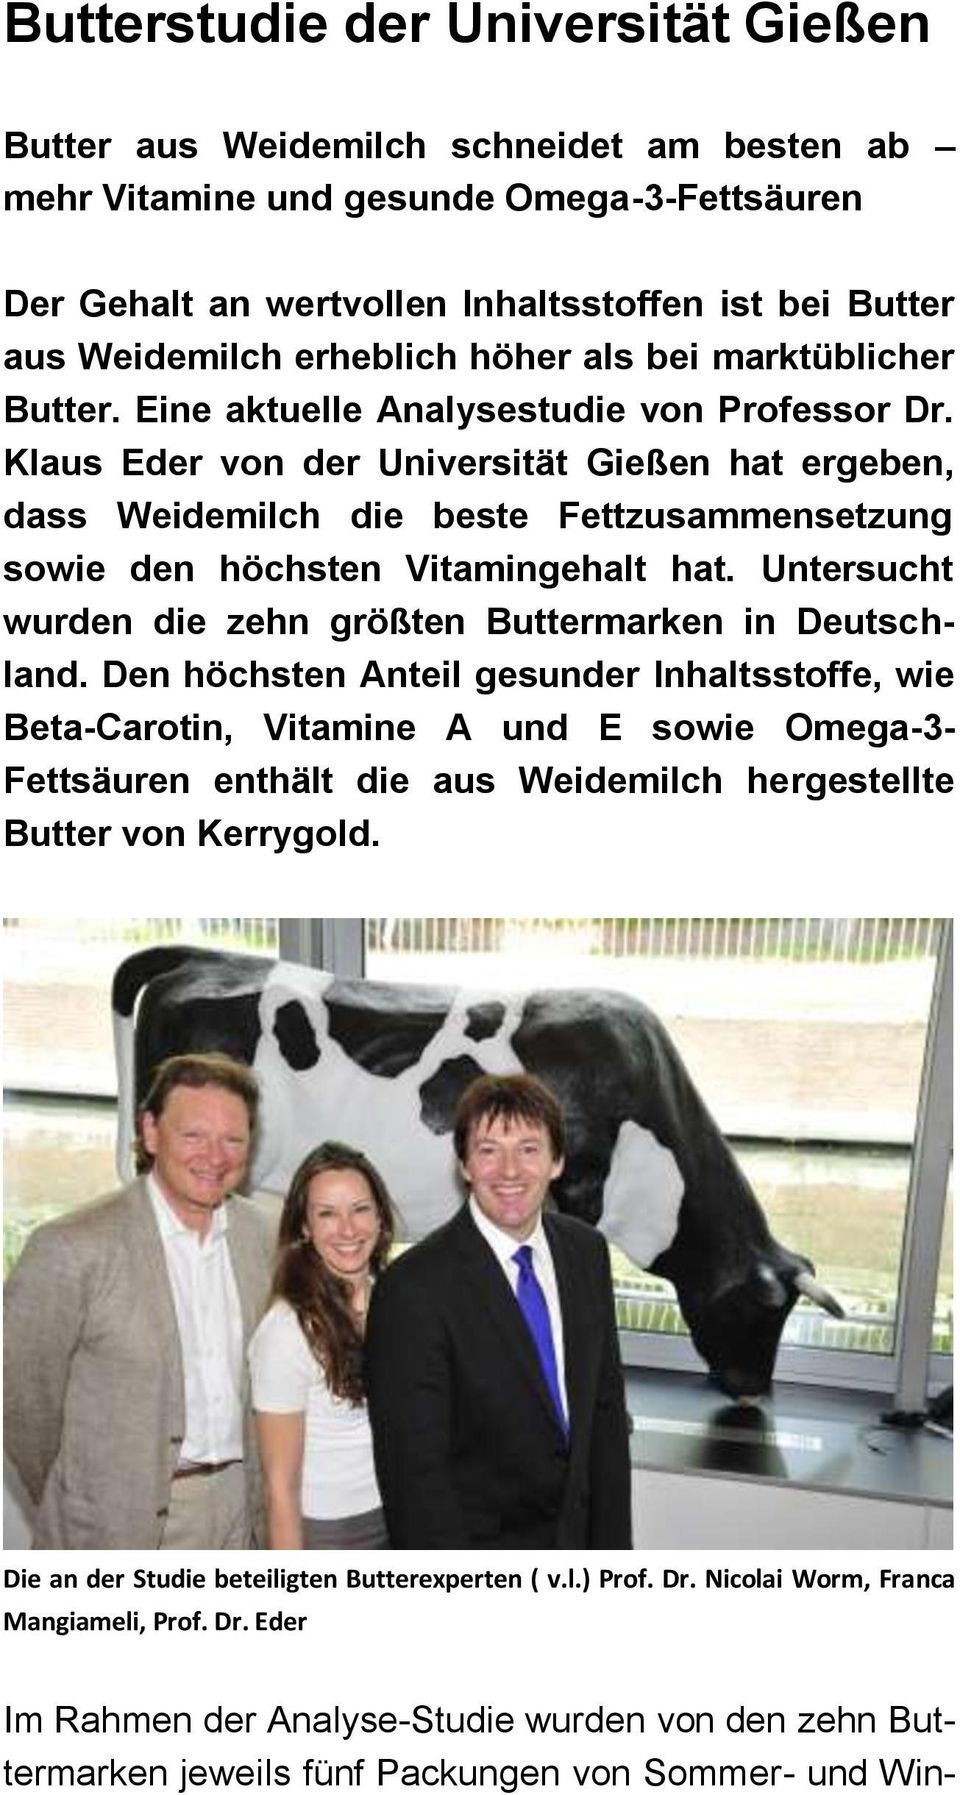 Klaus Eder von der Universität Gießen hat ergeben, dass Weidemilch die beste Fettzusammensetzung sowie den höchsten Vitamingehalt hat. Untersucht wurden die zehn größten Buttermarken in Deutschland.